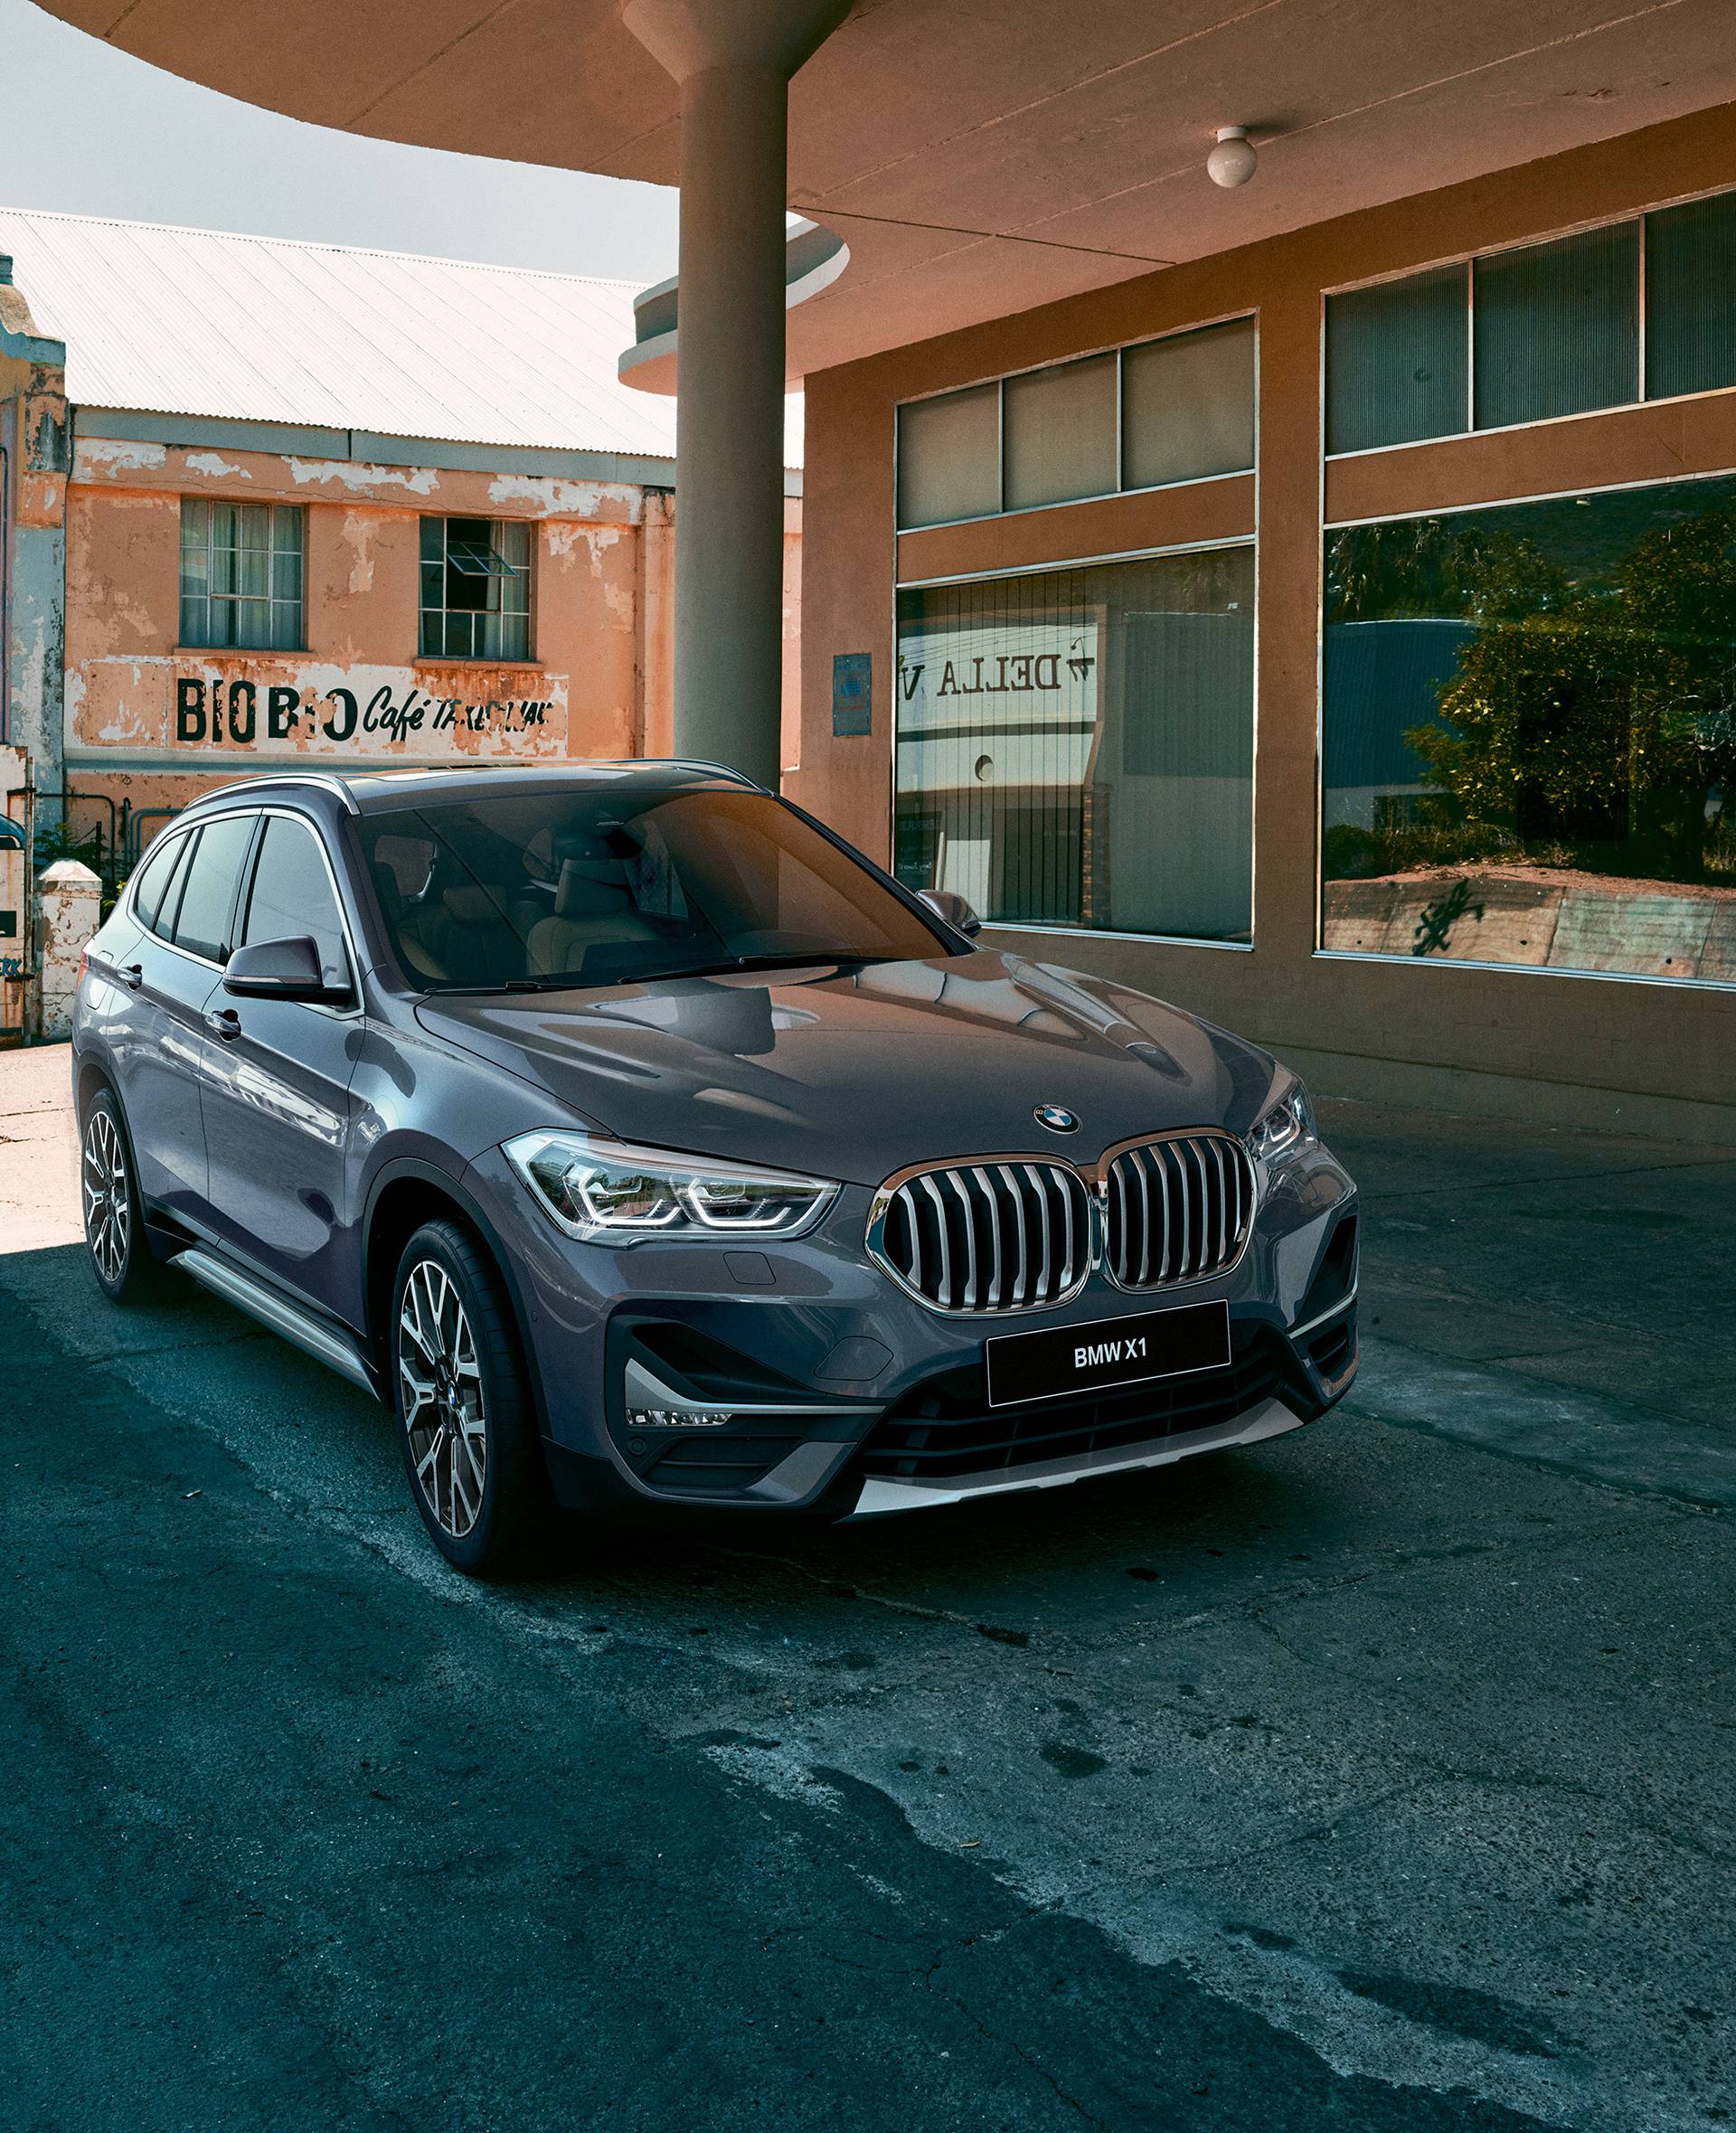 Posebna ponuda limitiranih izdanja BMW modela